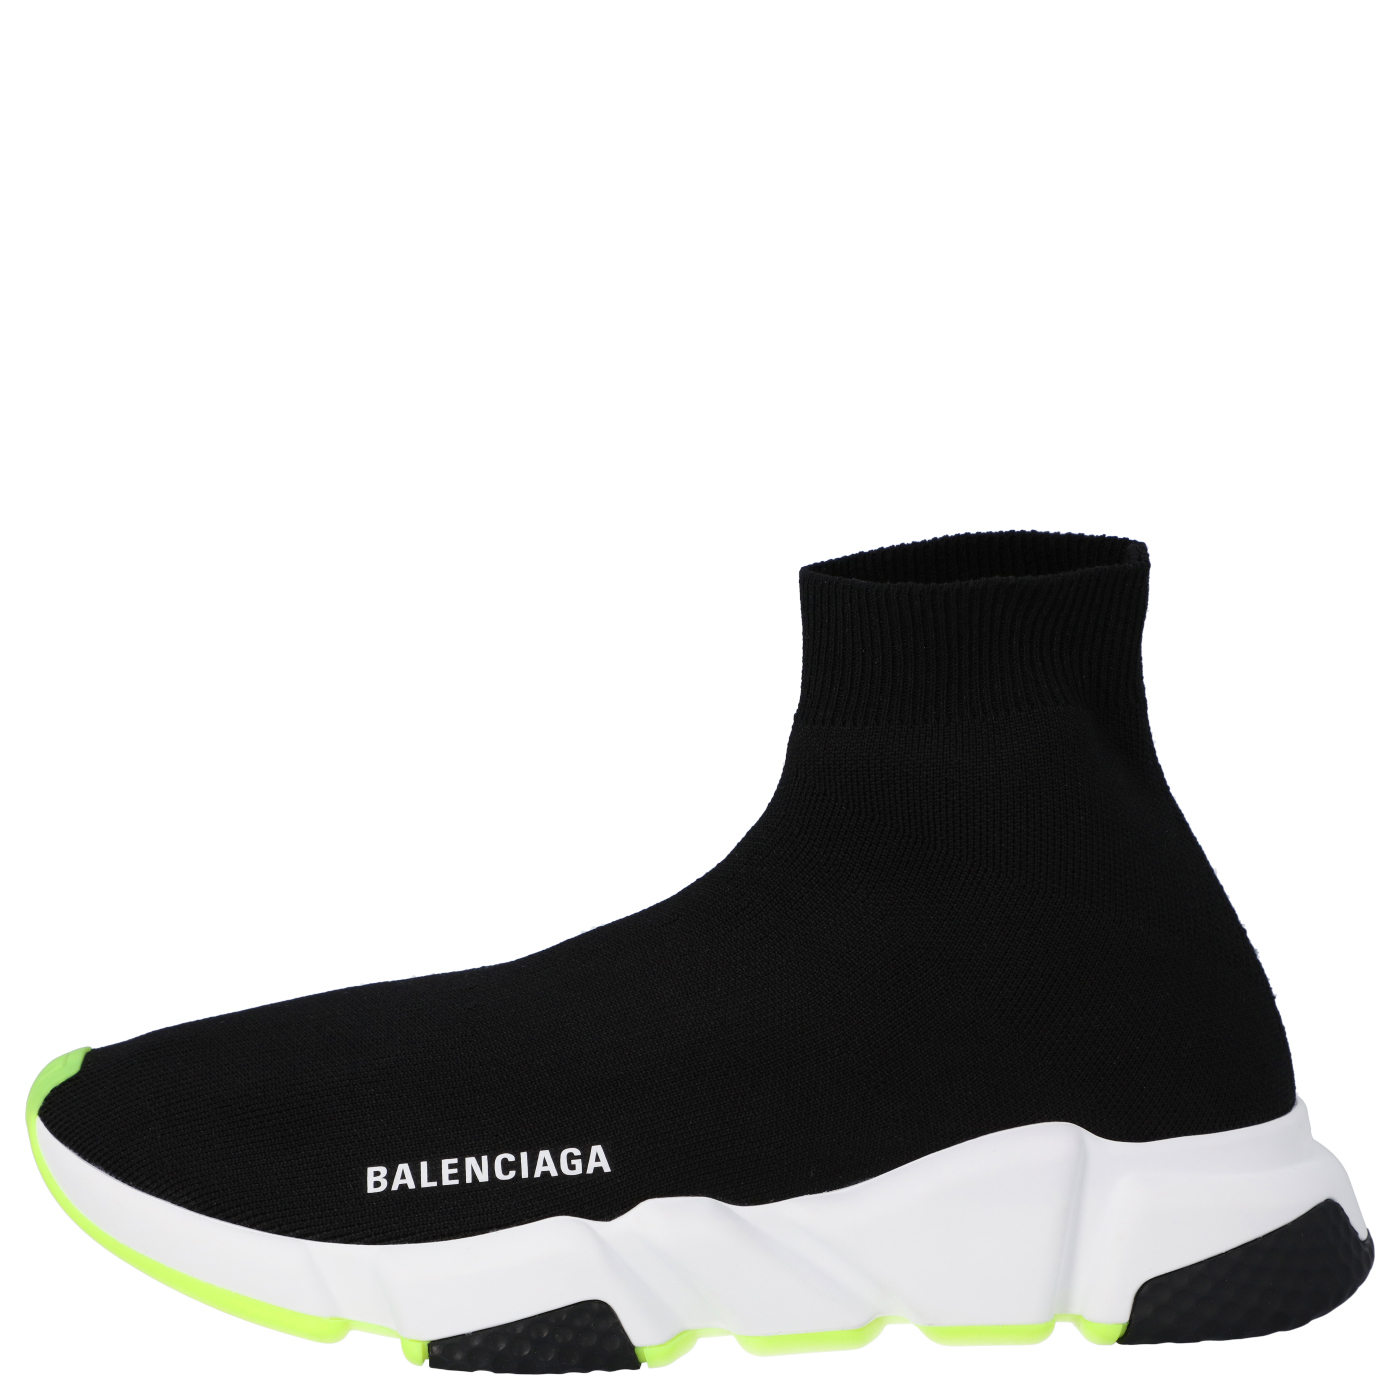 

Balenciaga Black/Neon Green Knit Speed High Top Sneakers Size EU